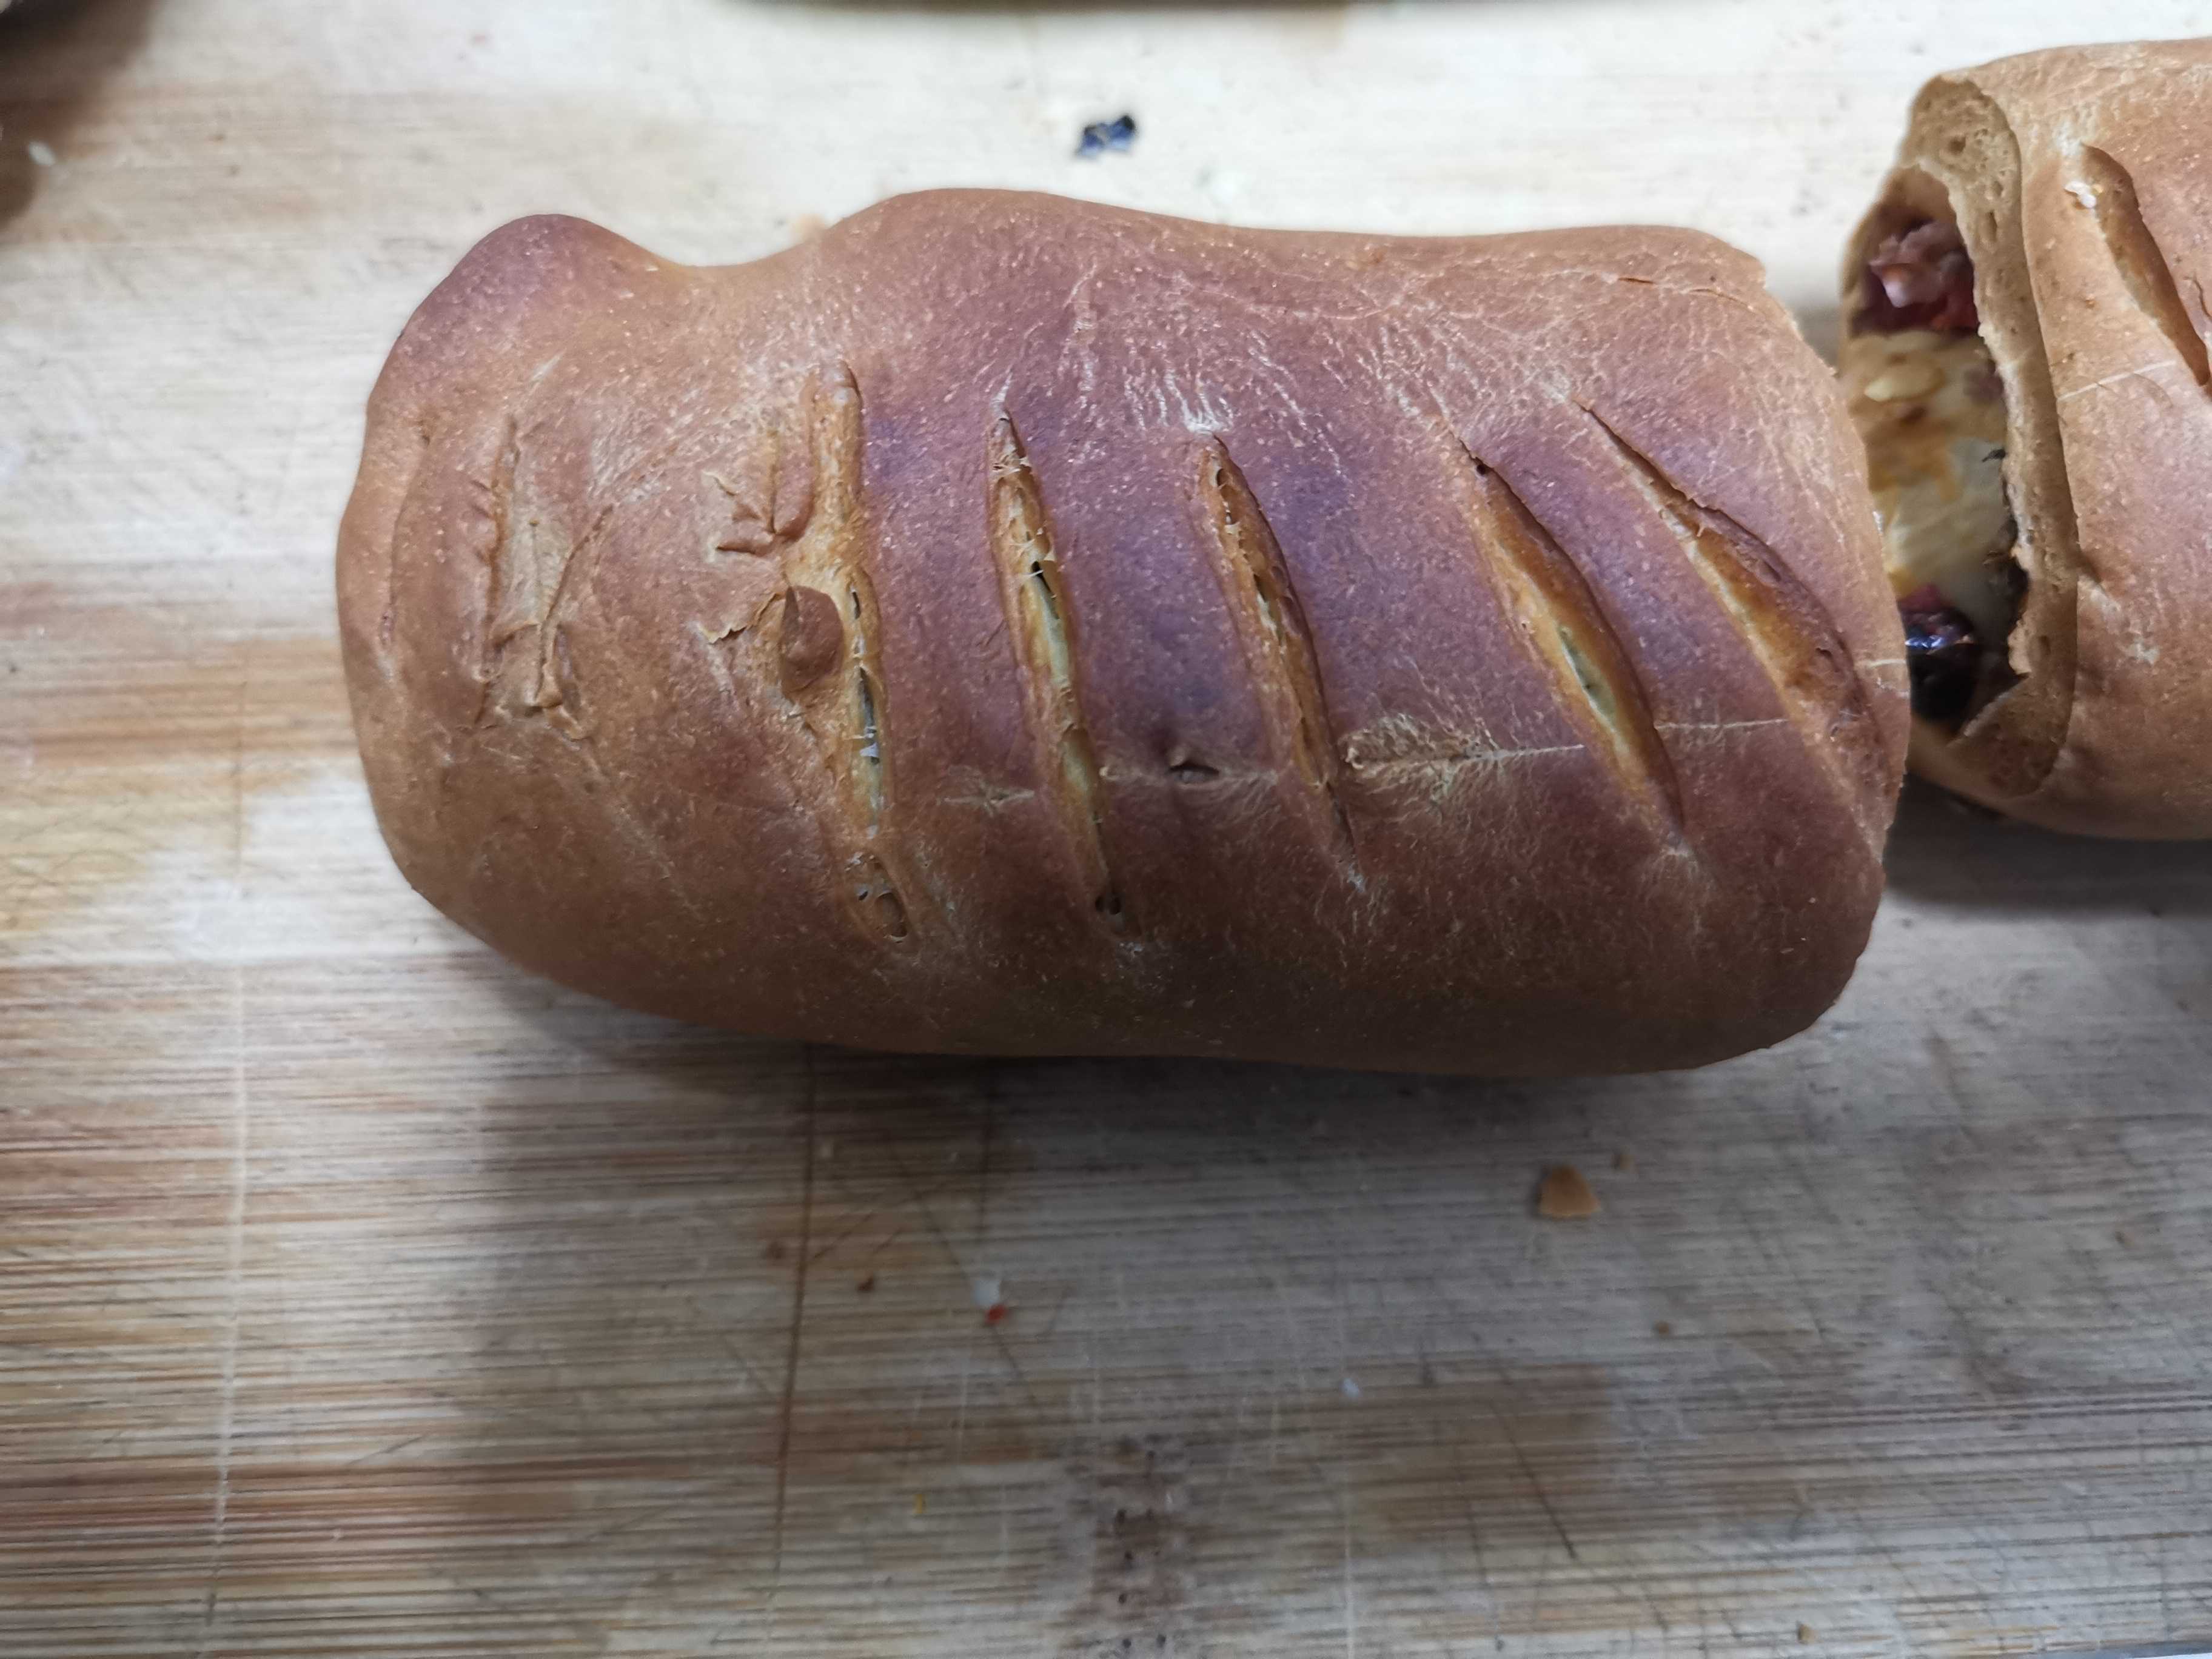 Big Leba Bread recipe